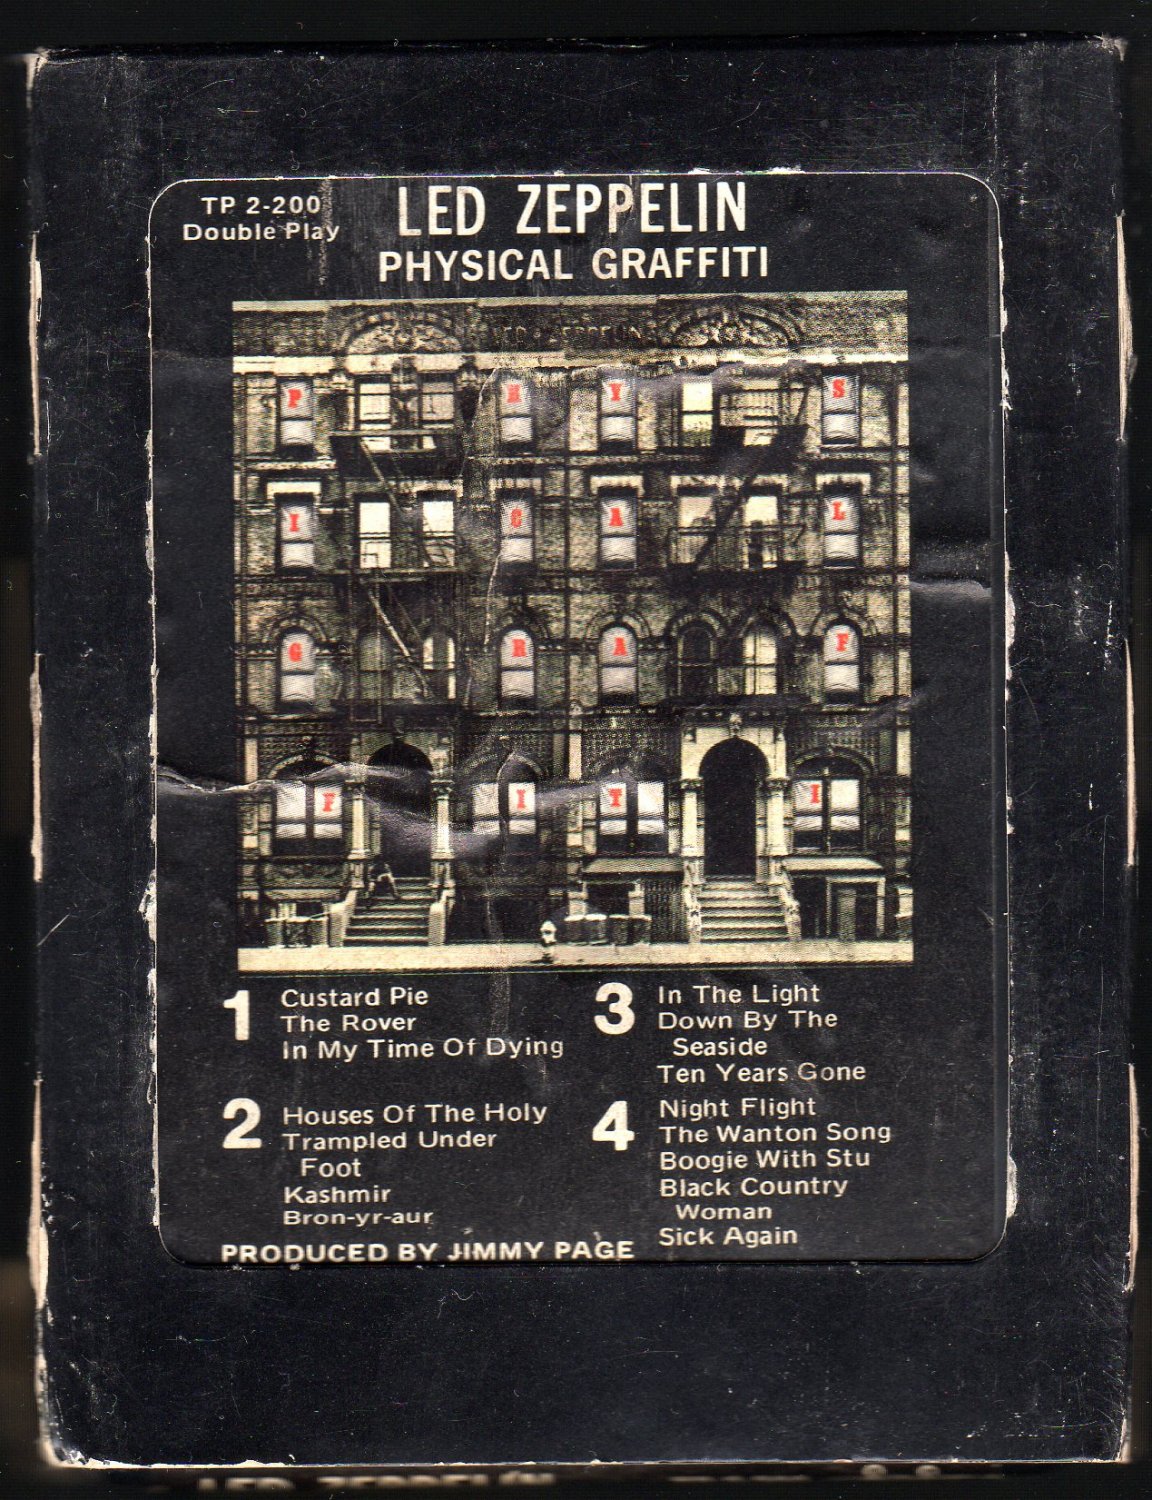 Led zeppelin physical. Led Zeppelin - physical Graffiti (1975) LP. Led Zeppelin physical Graffiti обложка. Physical Graffiti led Zeppelin альбомы led Zeppelin. Led Zeppelin physical Graffiti обложка разворот.